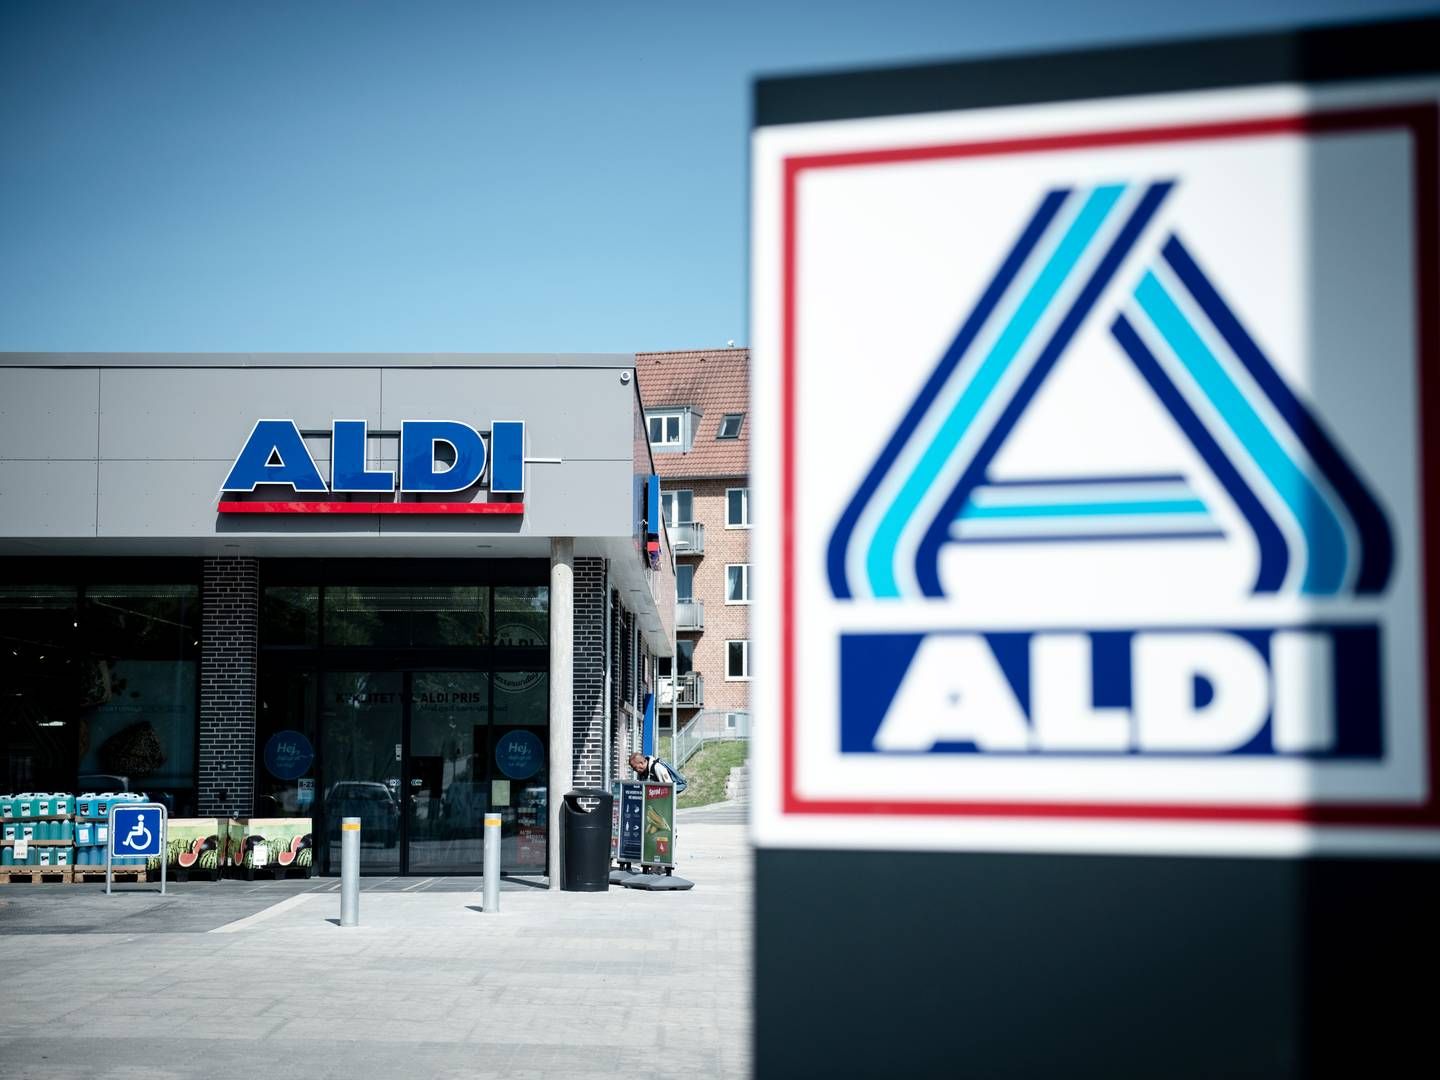 Den tyske detailkæde Aldi forlader efter årtier med underskud det danske marked og sælger 114 butikker til Rema 1000, oplyste parterne i december 2022. | Foto: Christian Lykking